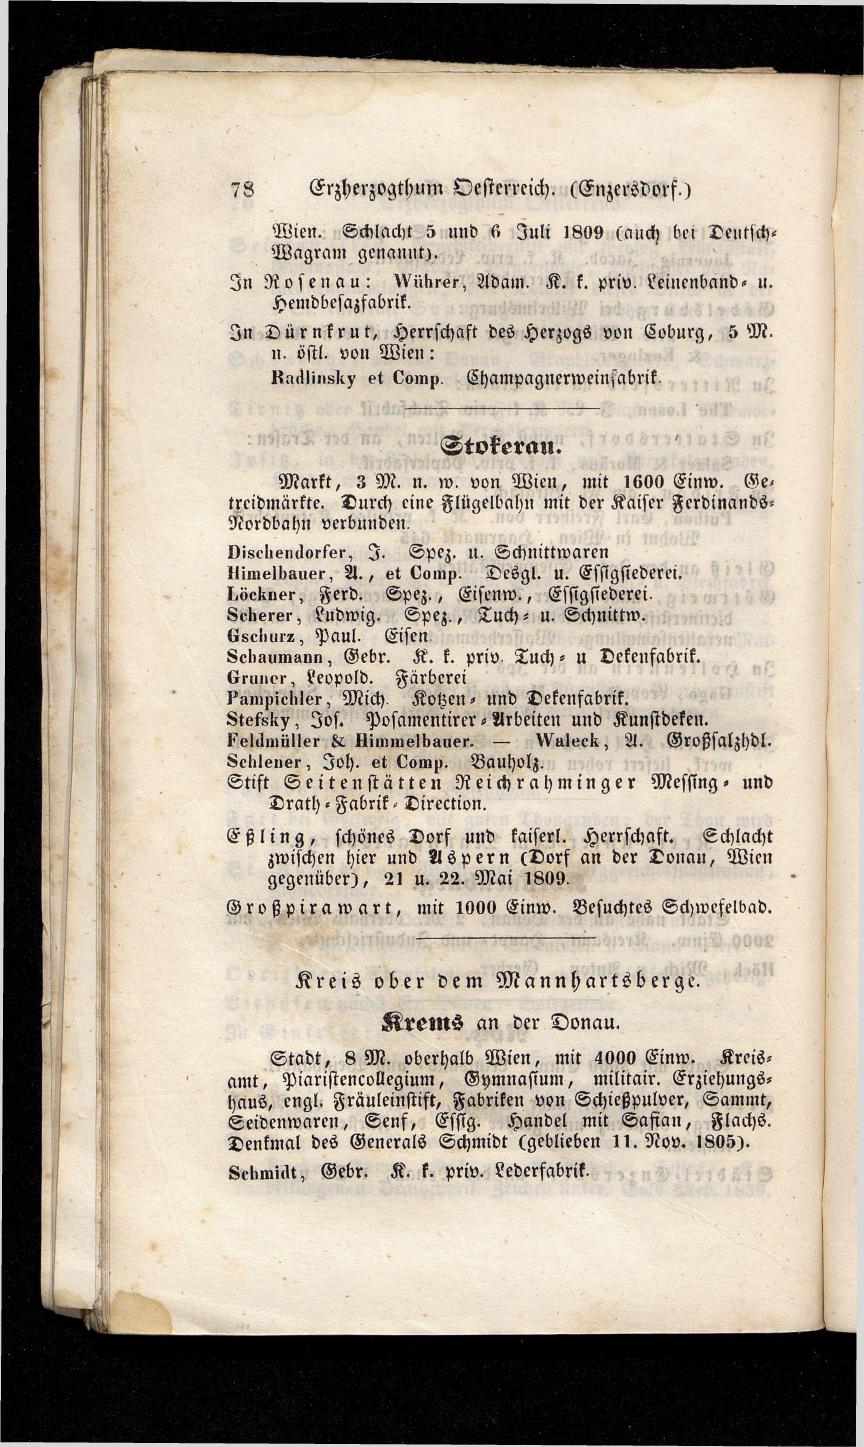 Grosses Adressbuch der Kaufleute. No. 13. Oesterreich ober u. unter der Enns 1844 - Seite 82